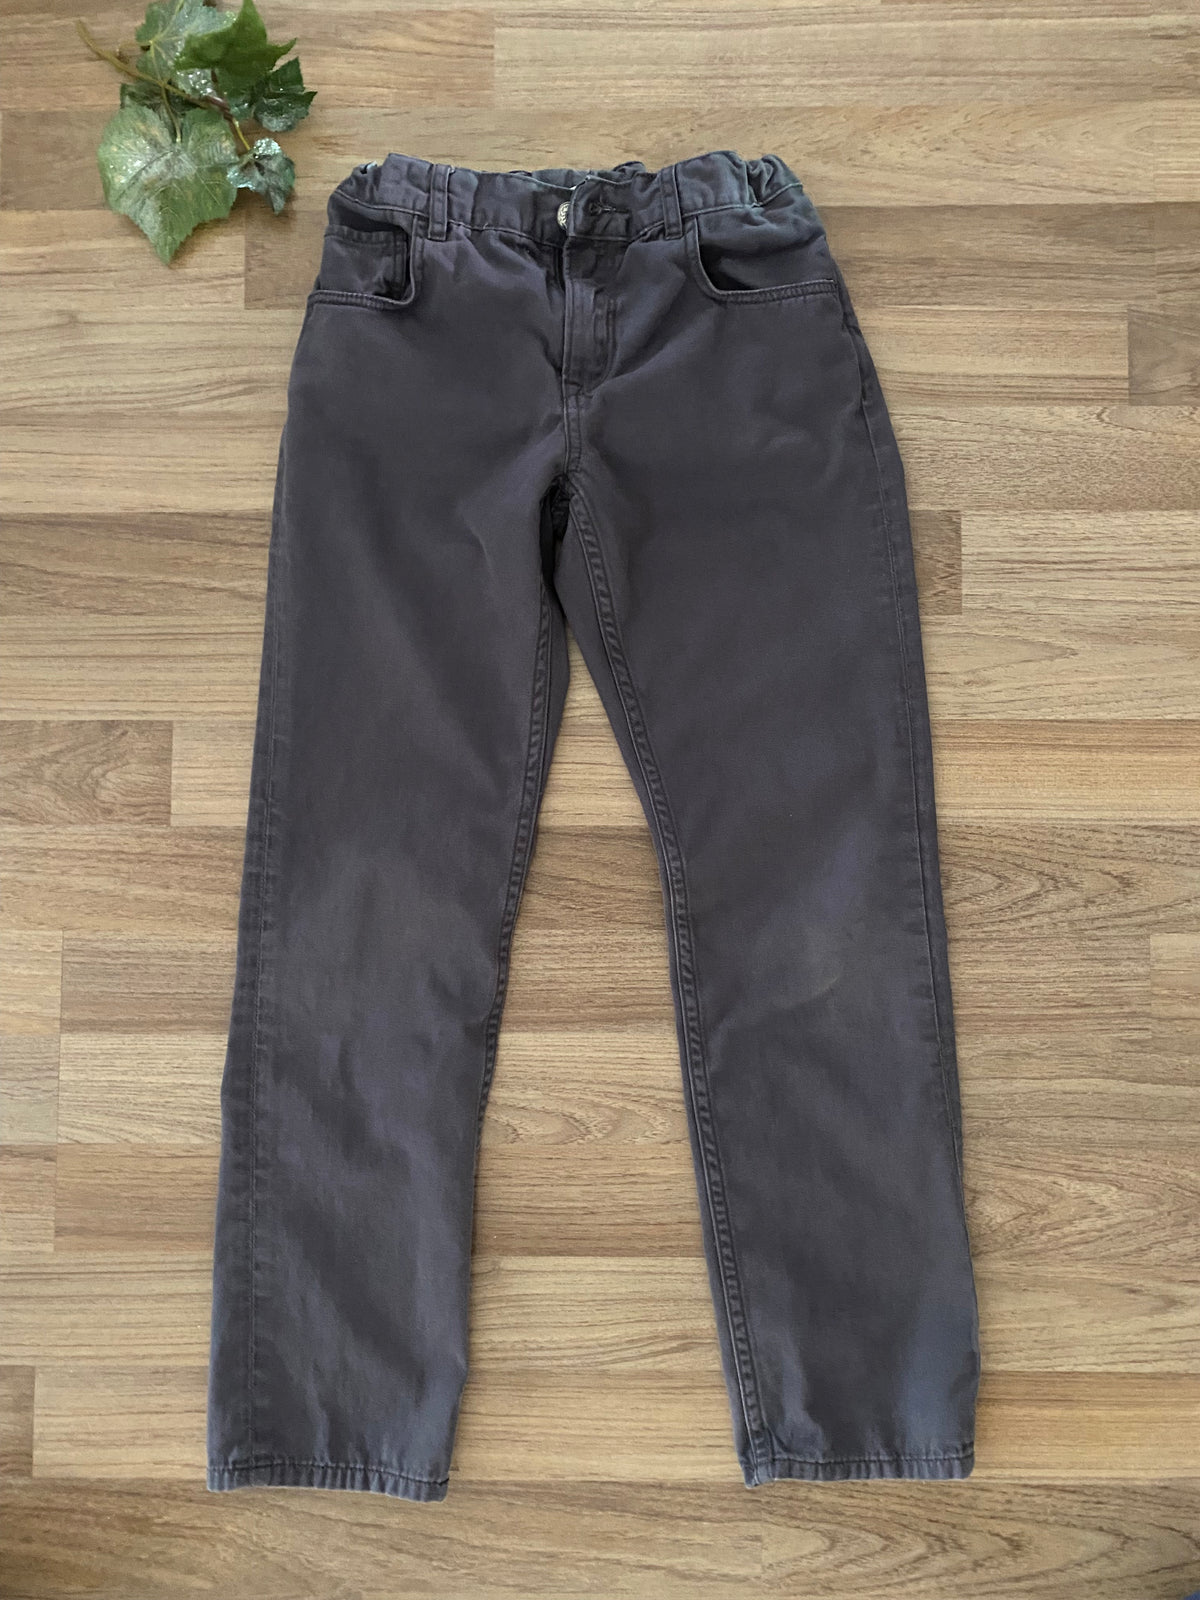 Pants (Boys Size 9-10)